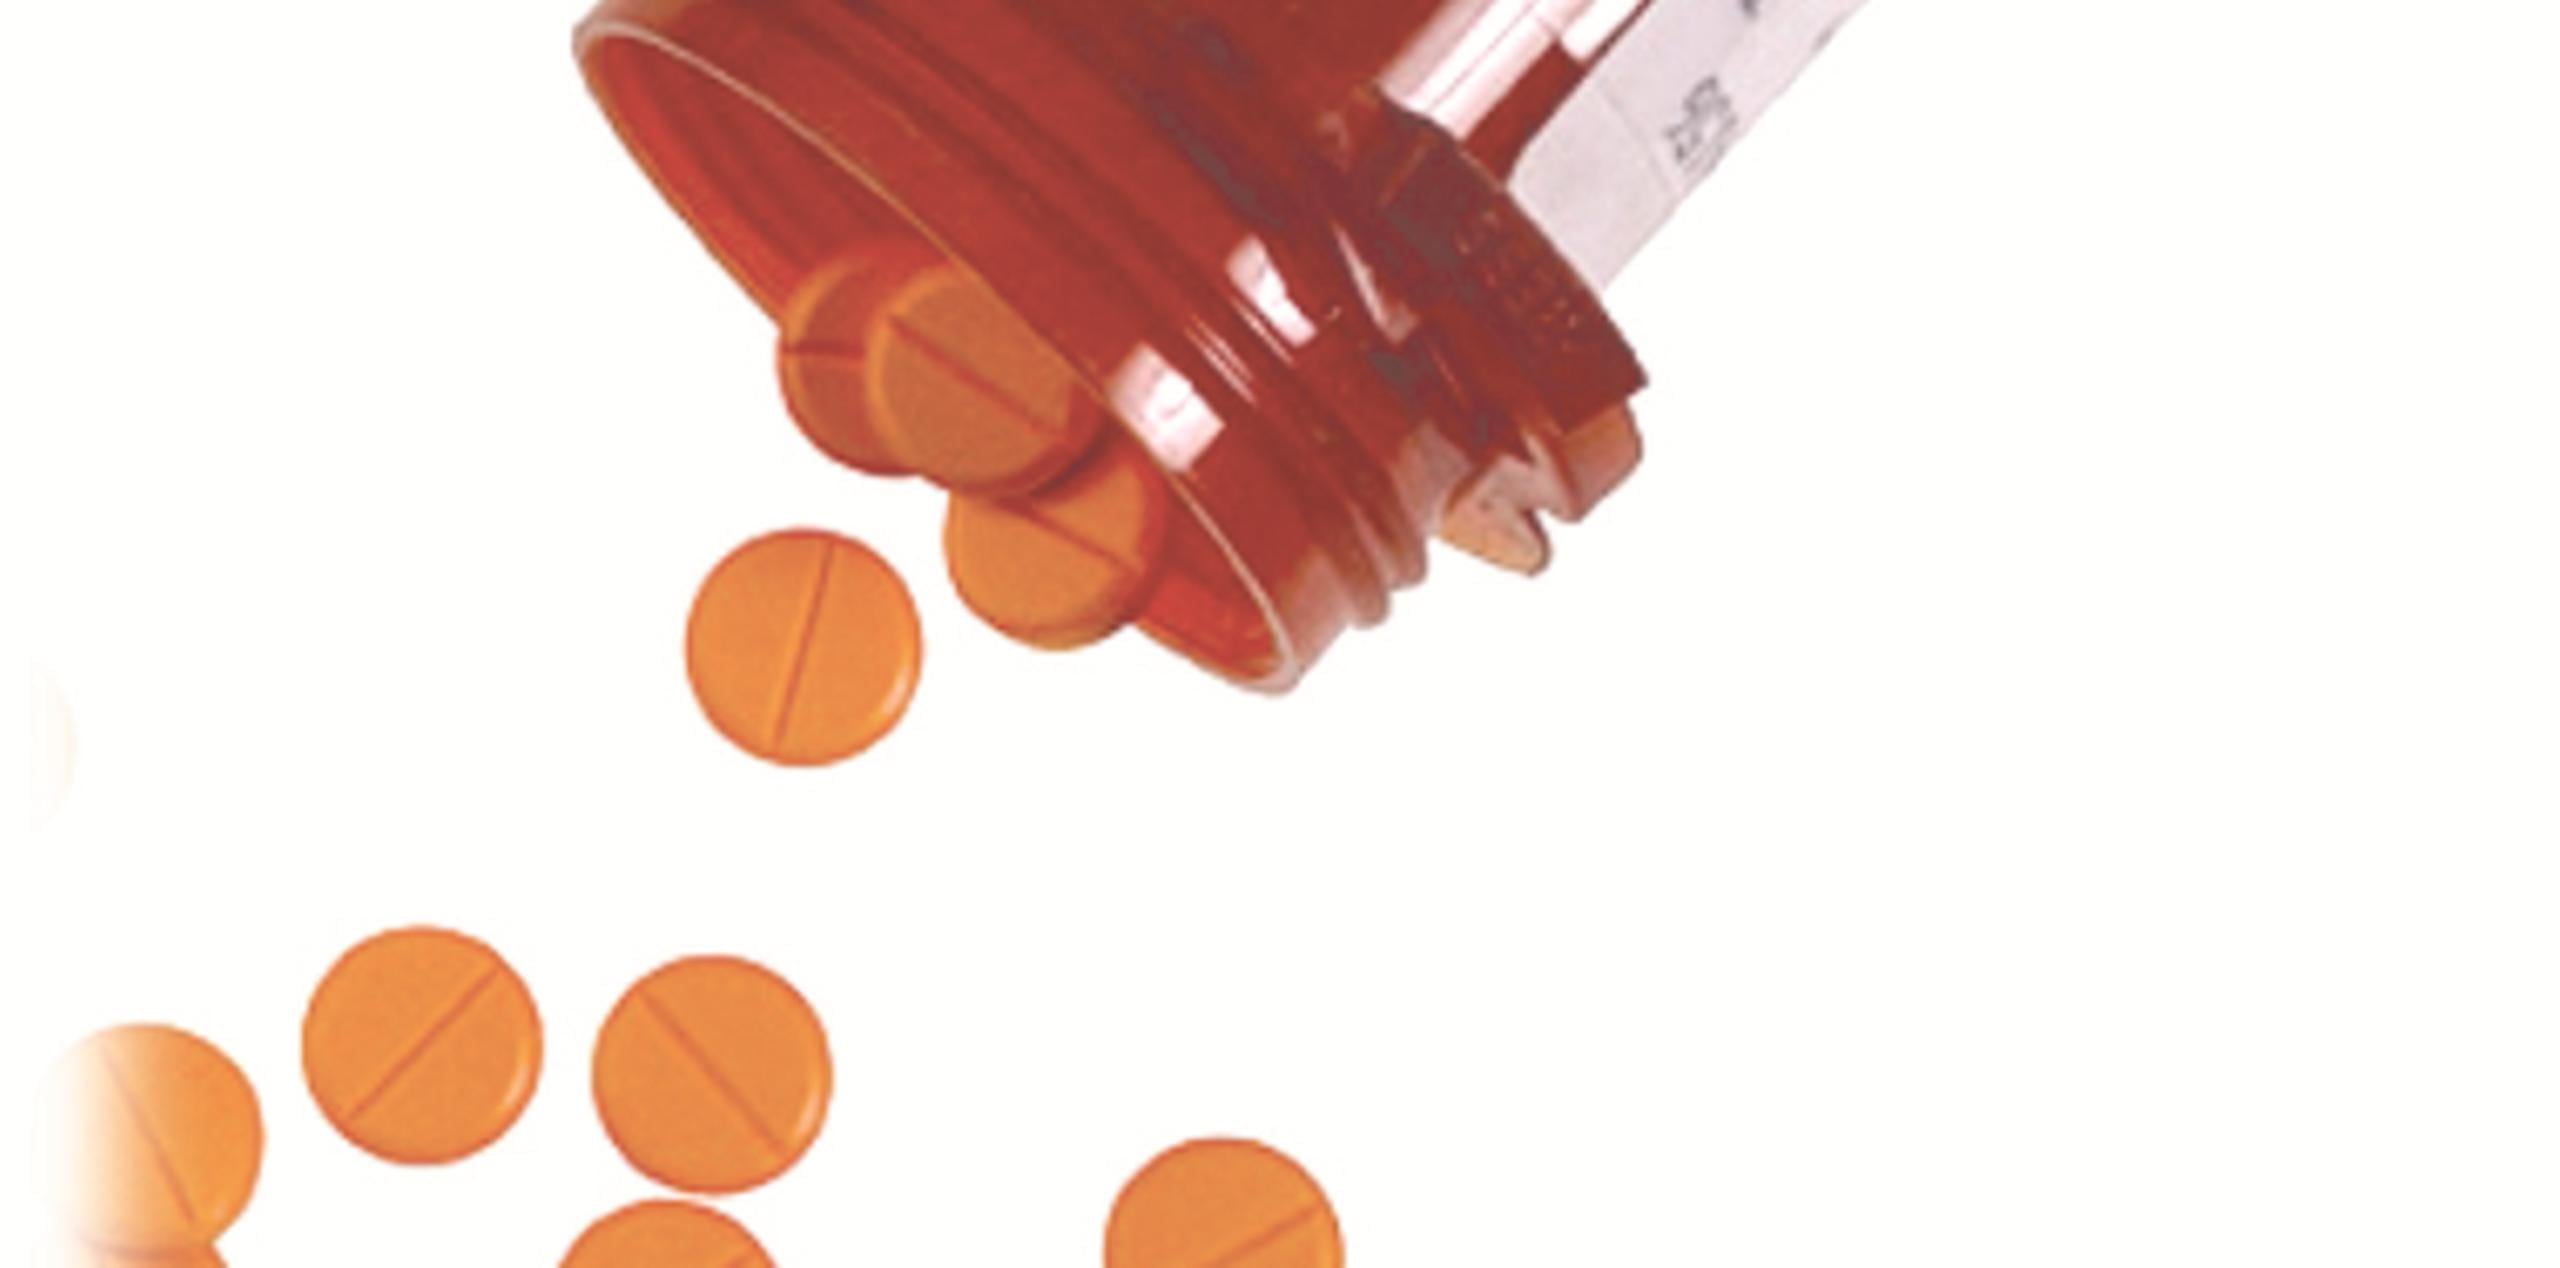 El portal de la Administración de Drogas y Alimentos (FDA) describe el Tramadol como un opiácido usado para combatir dolores no autorizado para menores y peligroso para personas con tendencias suicidas o a mezclar sustancias. (Archivo)